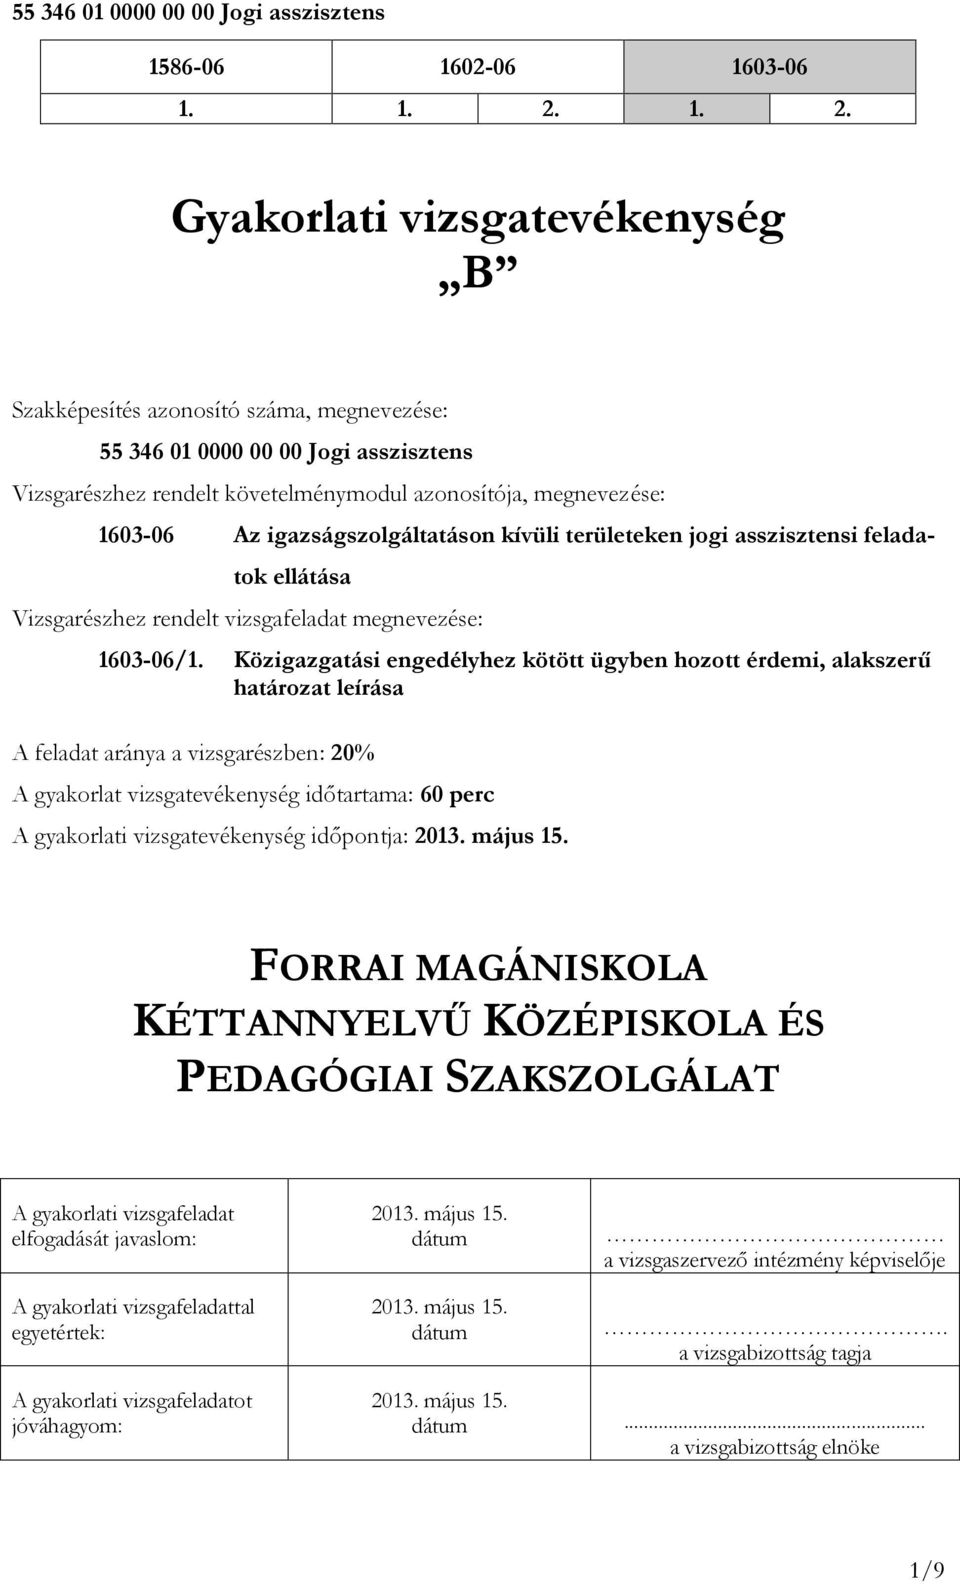 igazságszolgáltatáson kívüli területeken jogi asszisztensi feladatok ellátása Vizsgarészhez rendelt vizsgafeladat megnevezése: 603-06/.